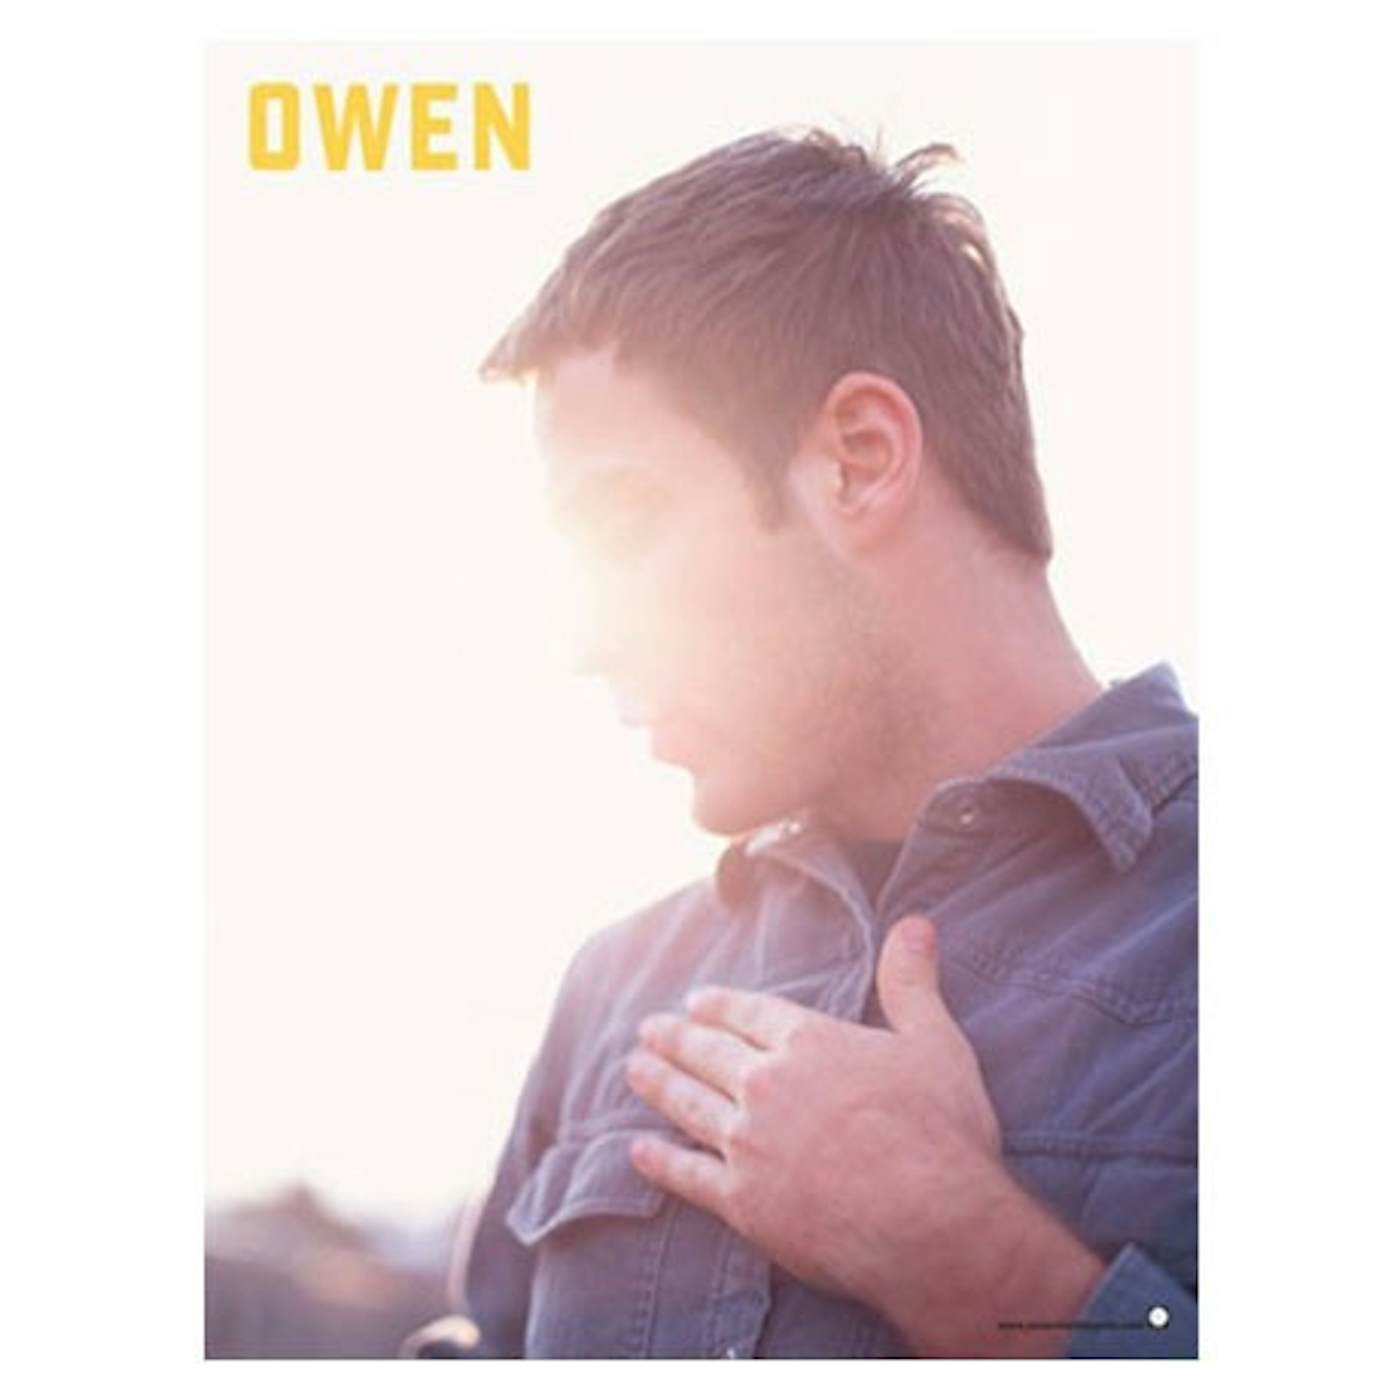 Owen Poster (18"x24")